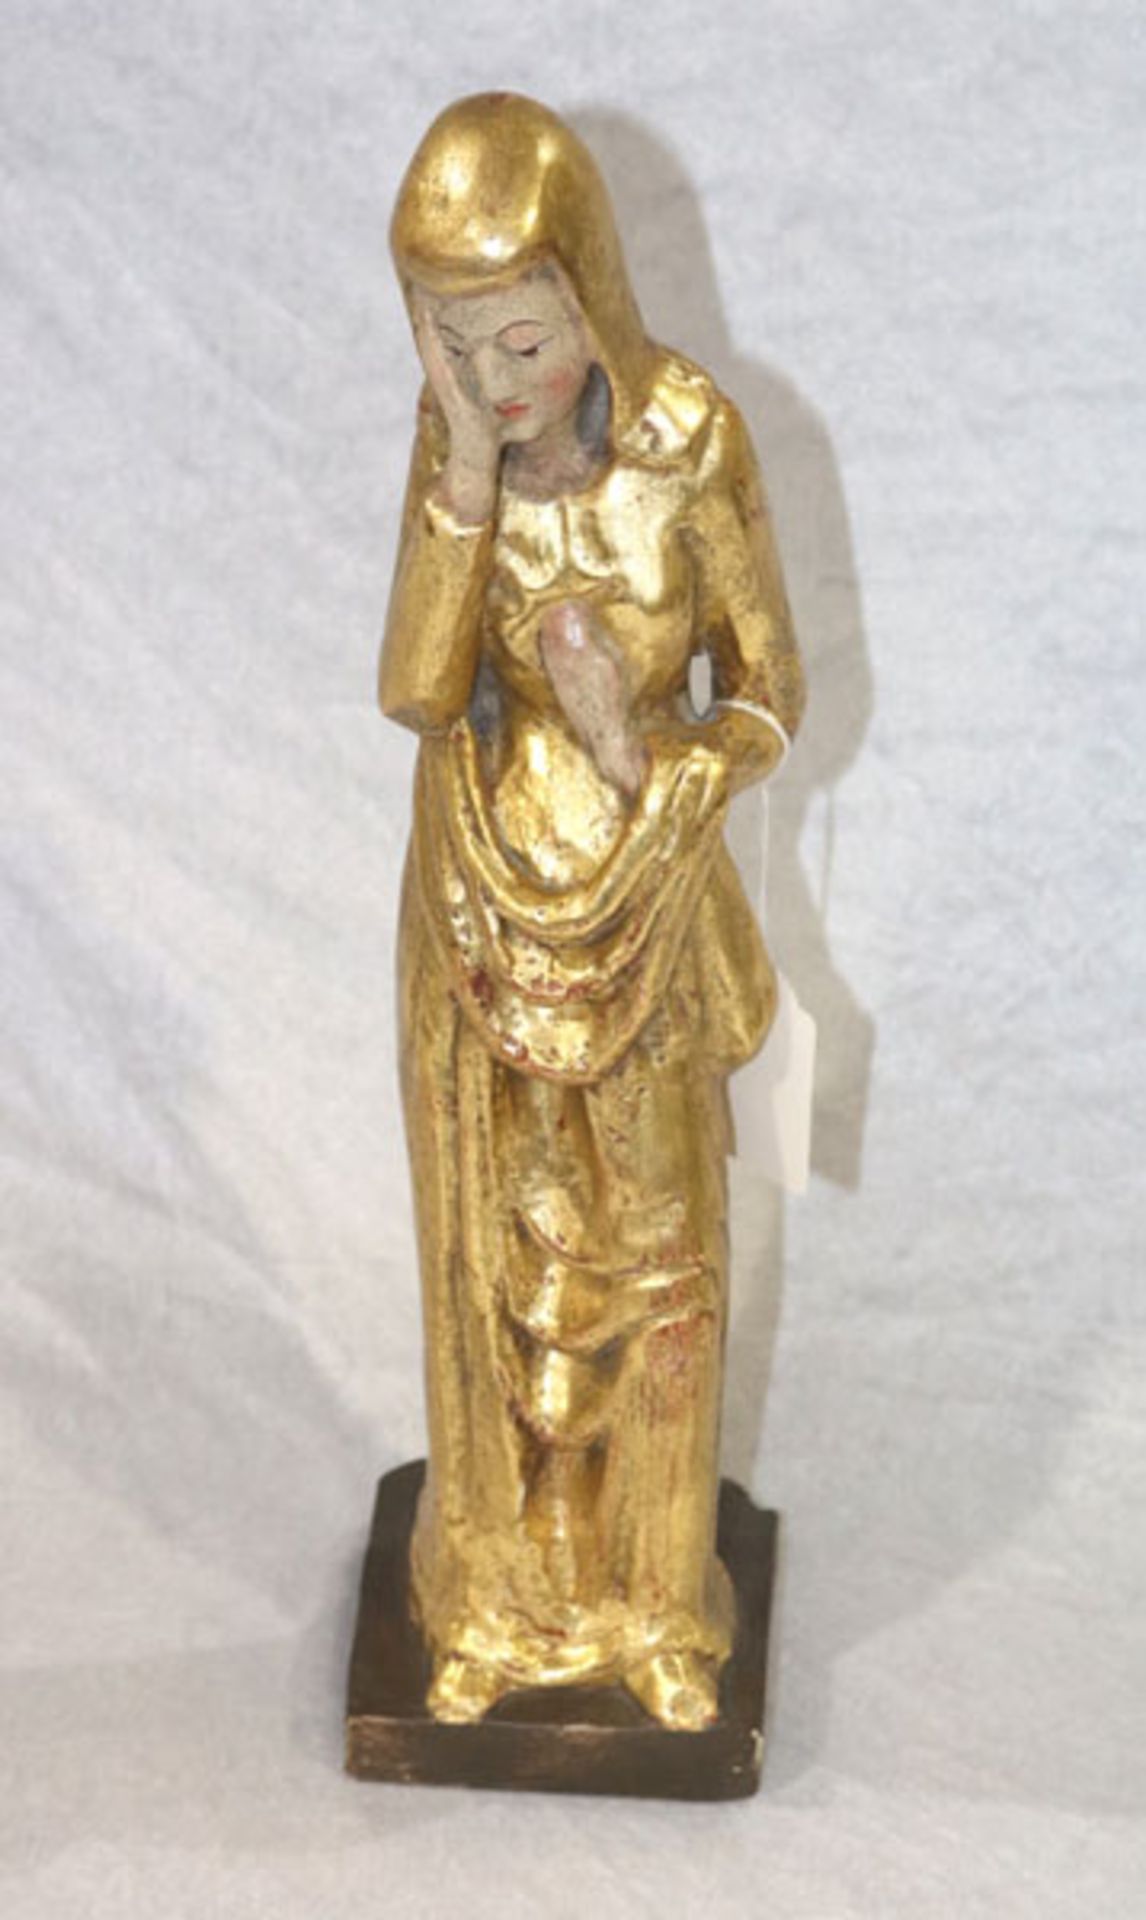 Holz Figurenskulptur 'Die Weinende', gold gefaßt, leicht bestossen, H 36,5 cm